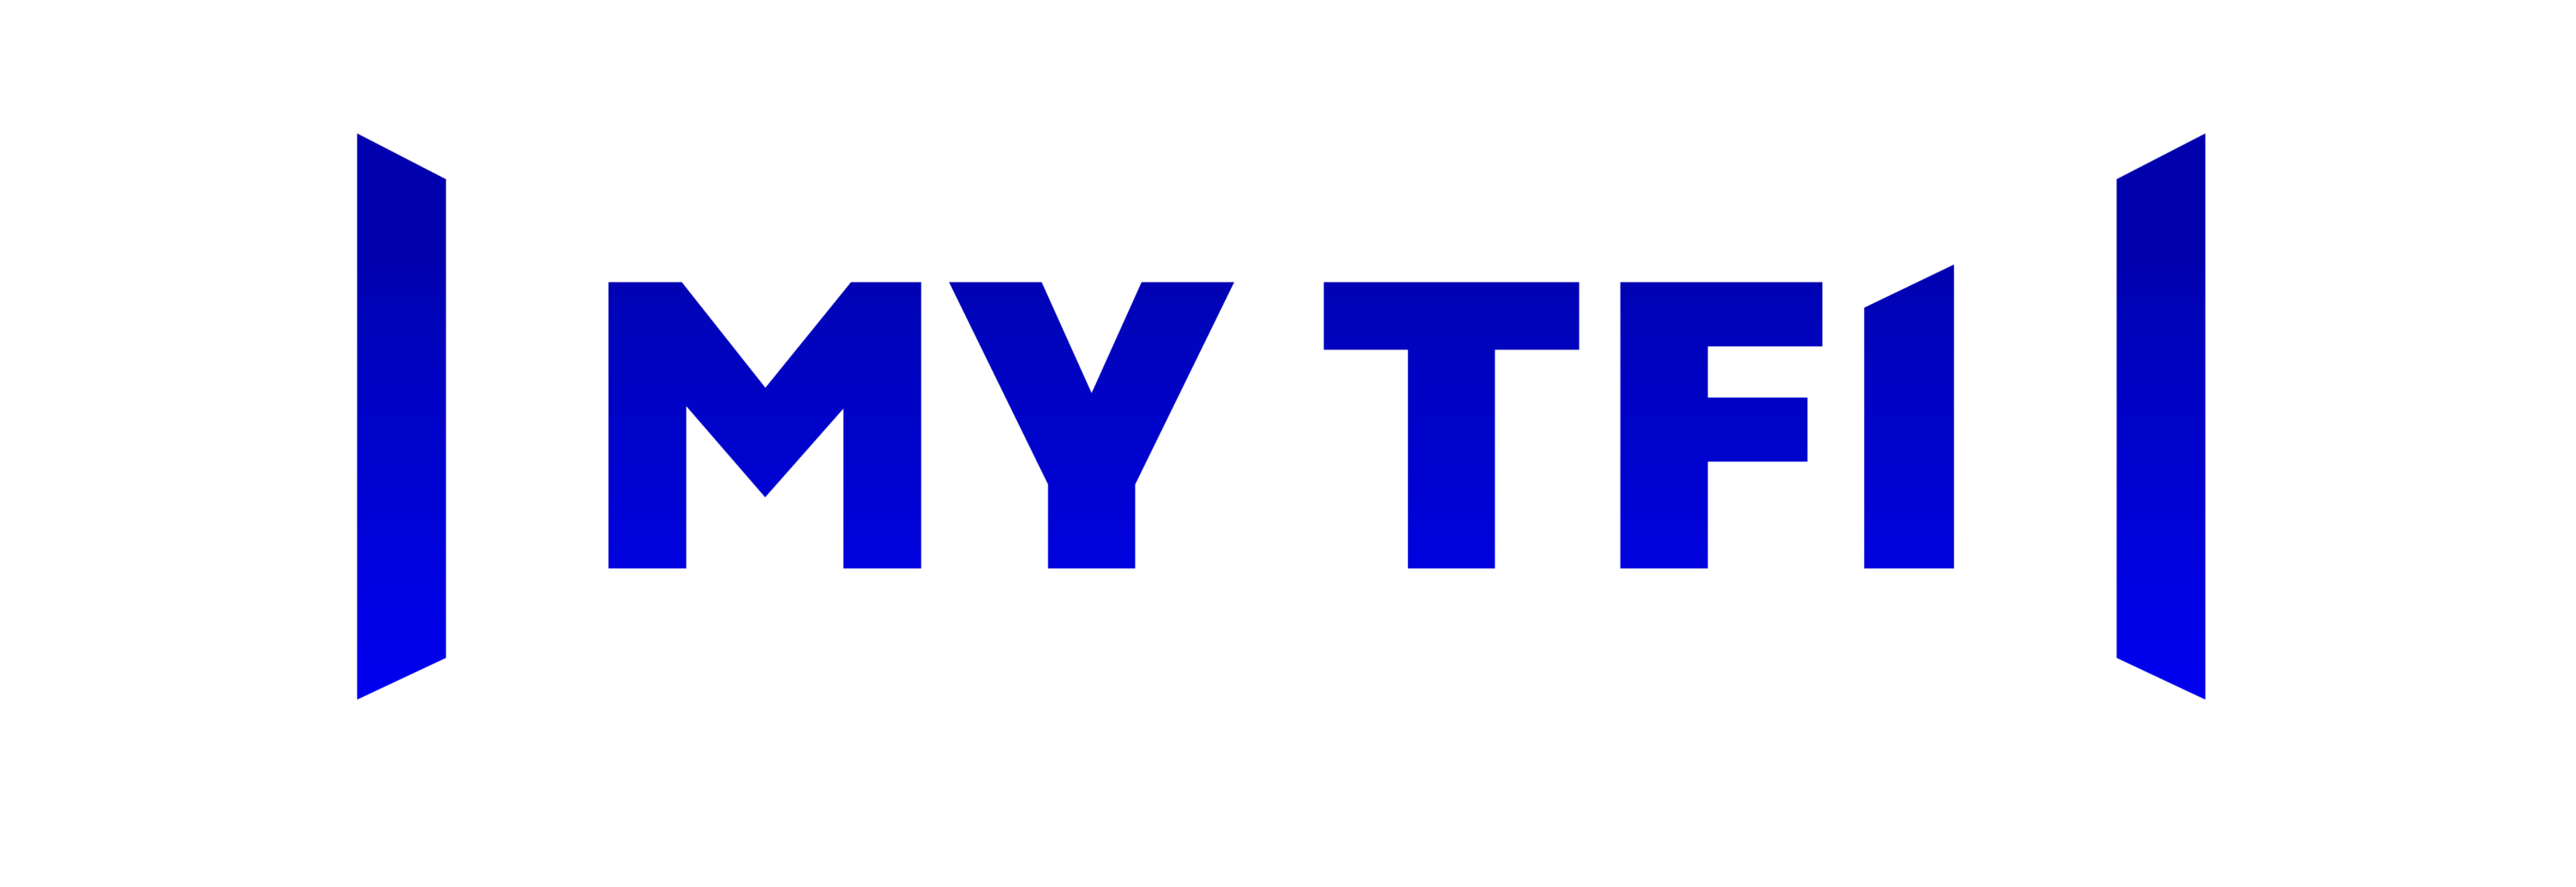 MYTF1: Le replay des chaînes du groupe TF1 bientôt chez Zeop